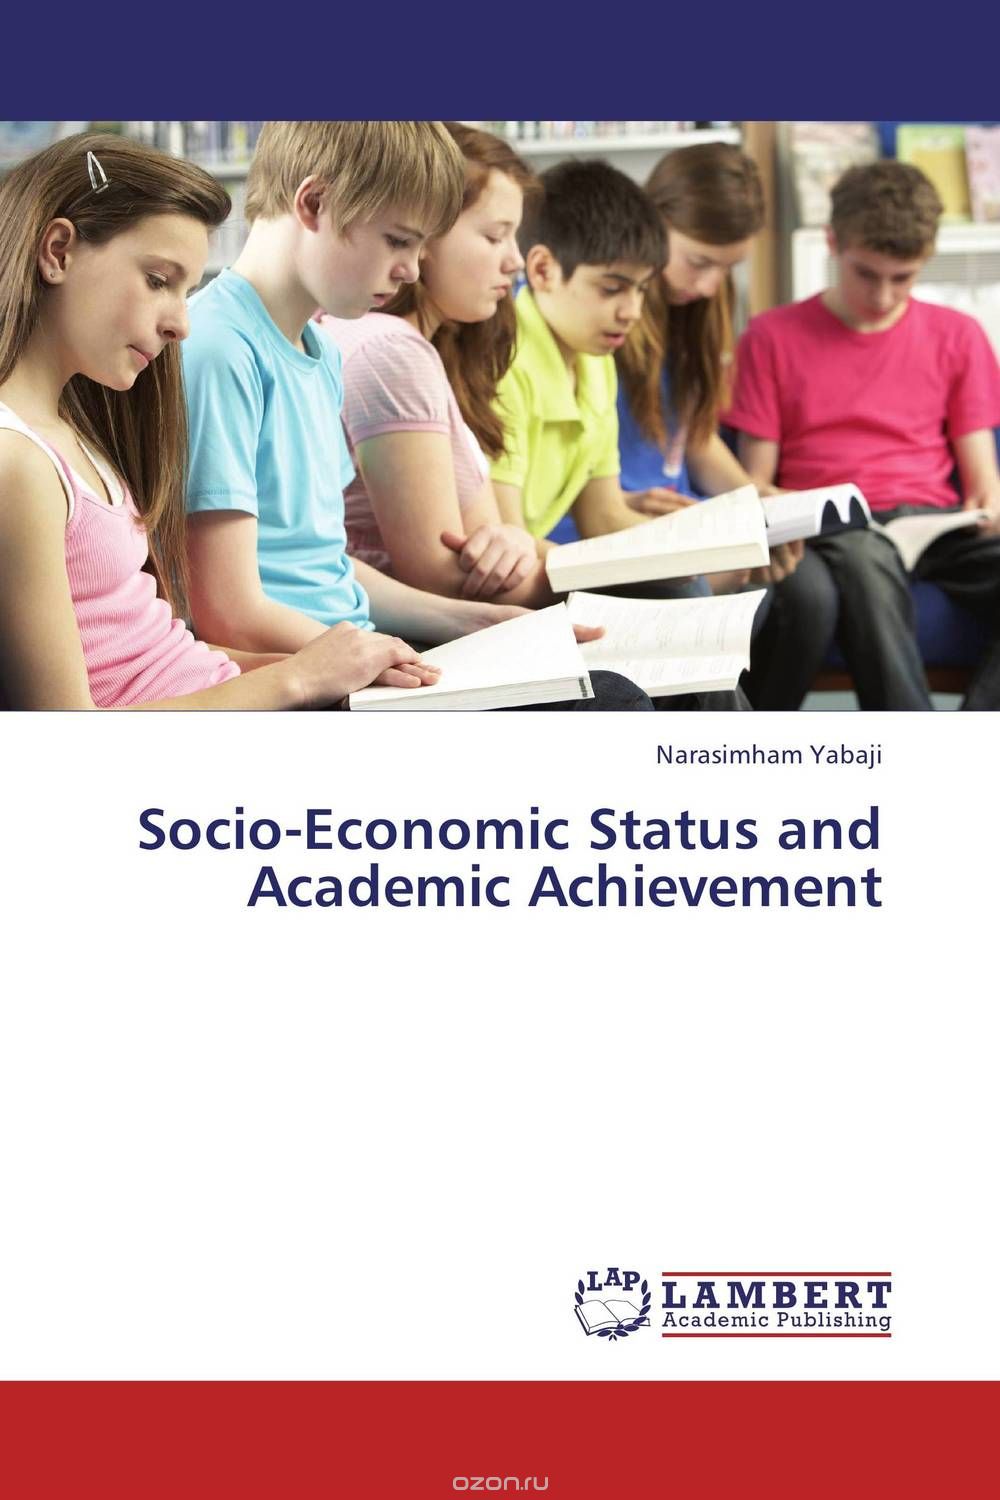 Скачать книгу "Socio-Economic Status and Academic Achievement"